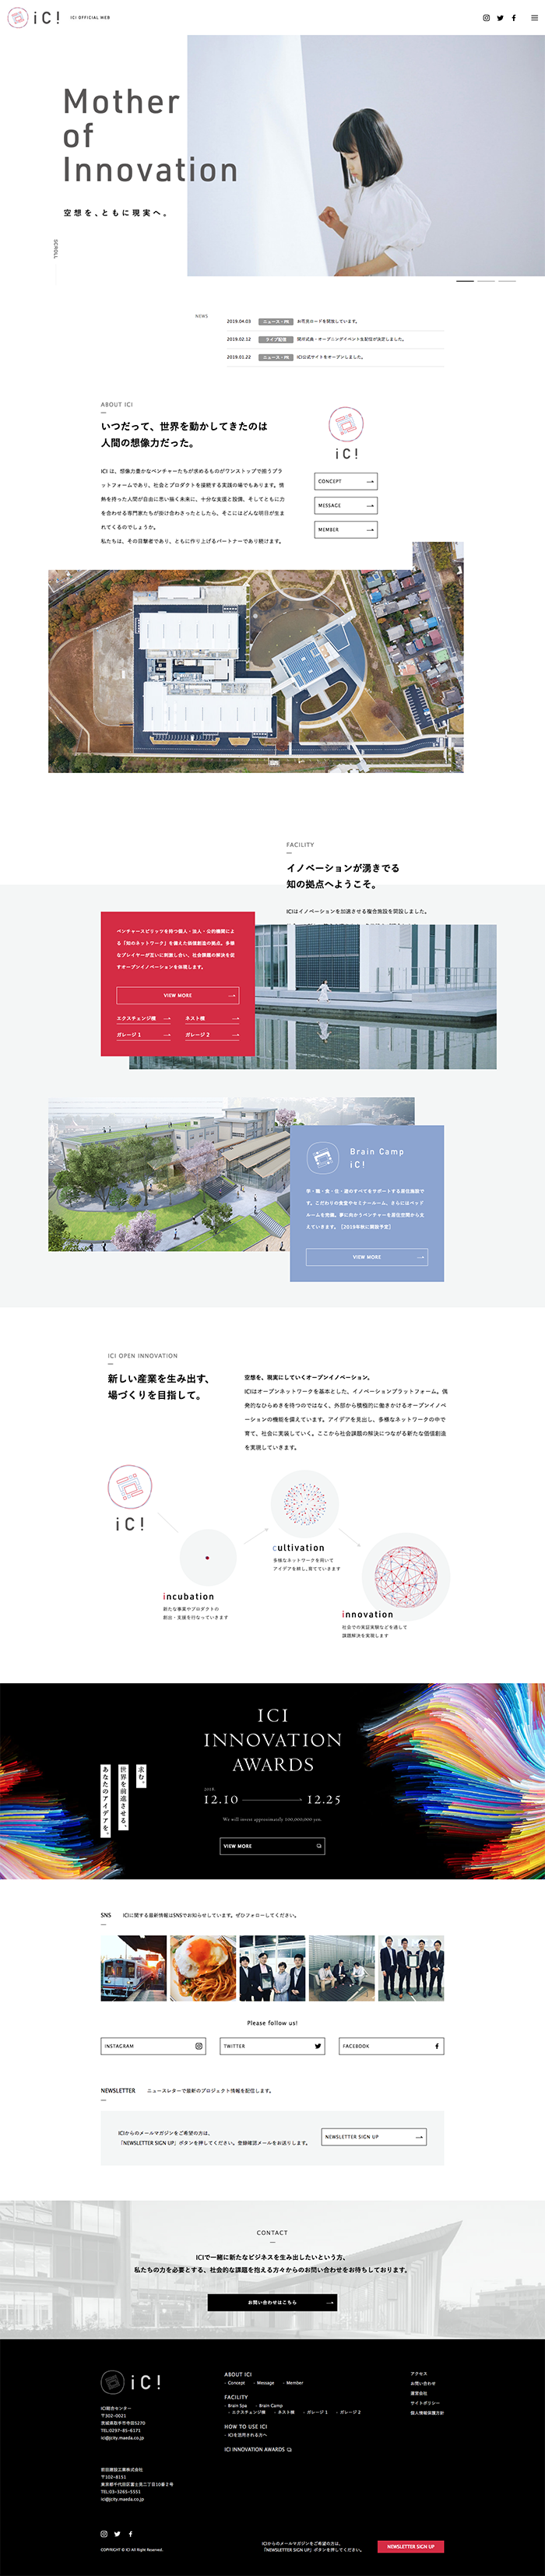 前田建設工業株式会社 / ICI総合センター公式WEBサイト